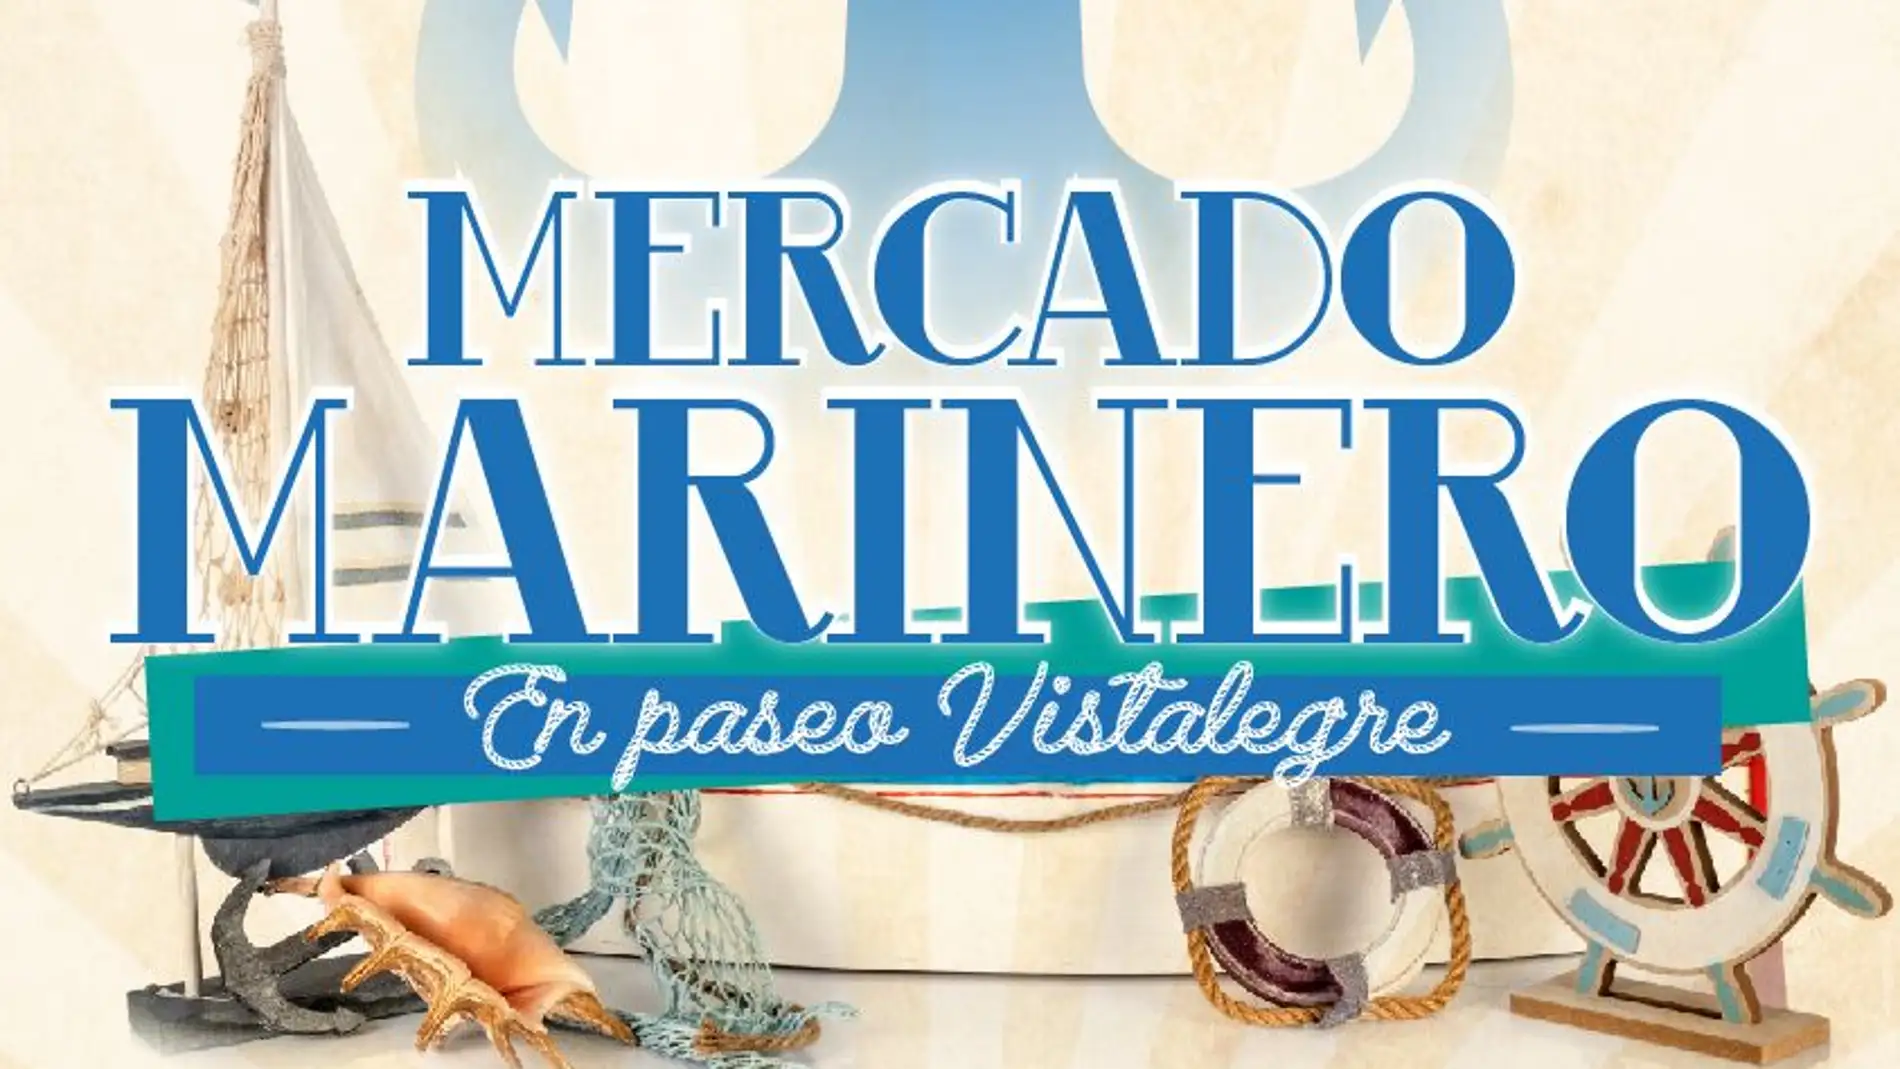 Del 8 al 12 de octubre tendrá lugar el mercado marinero en el paseo vistalegre de Torrevieja 